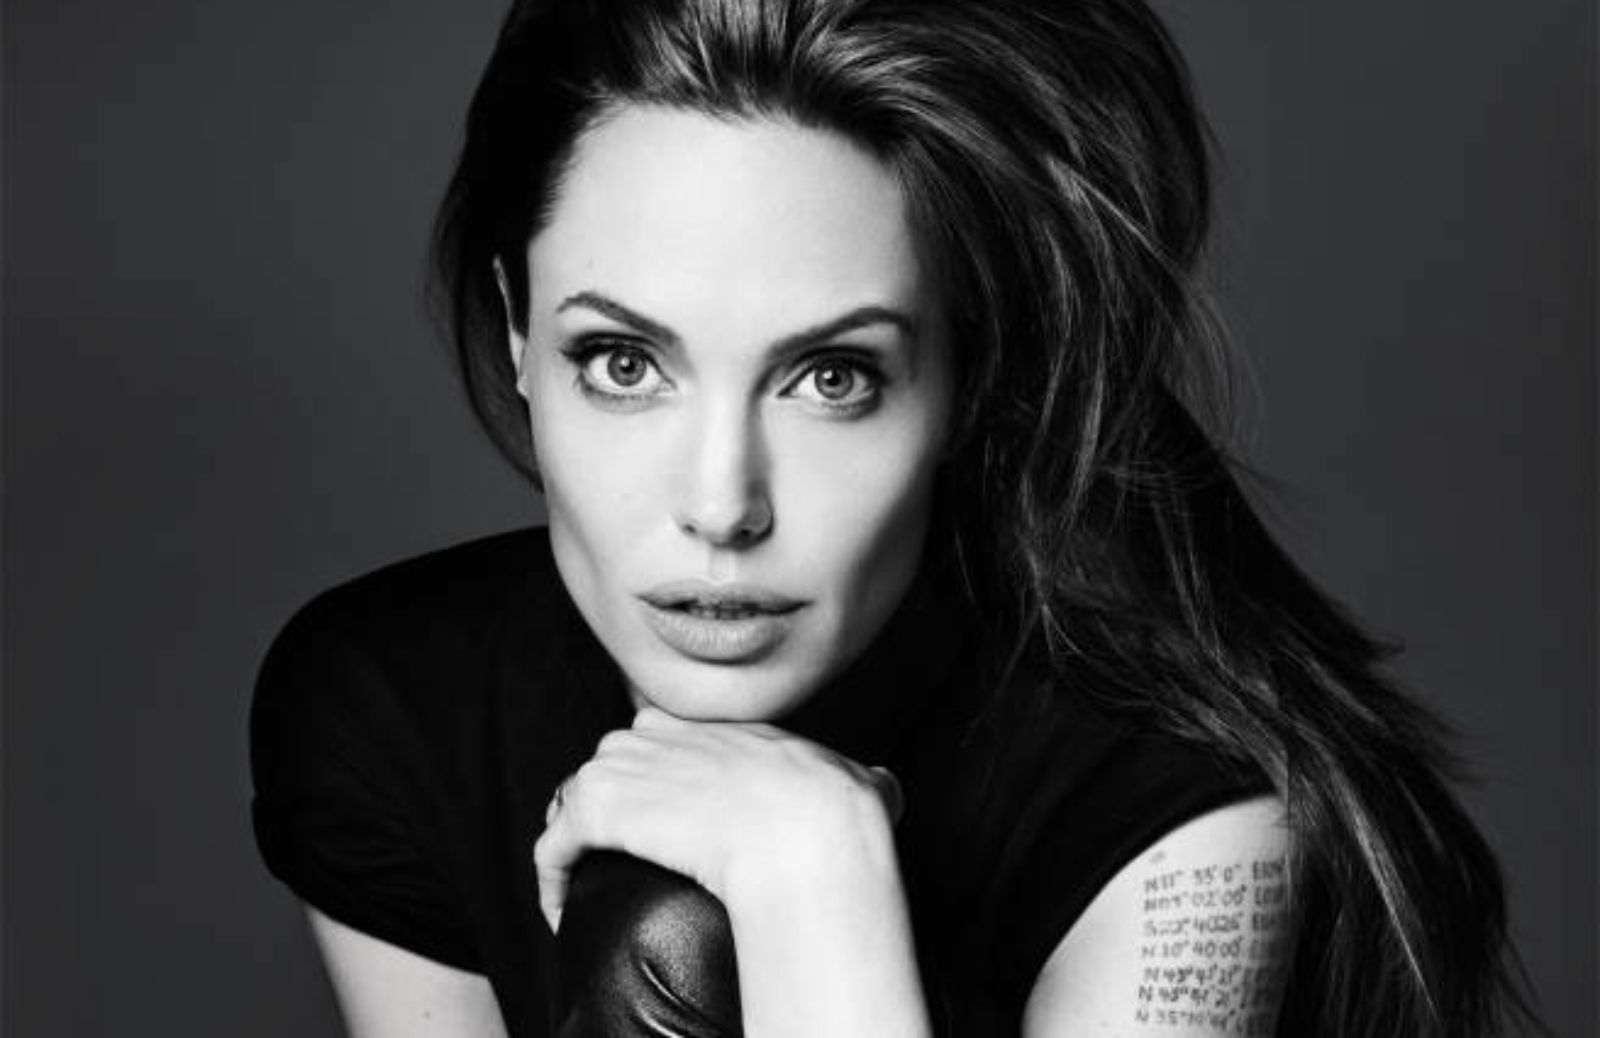 Buon compleanno Angelina! 40 anni di bellezza